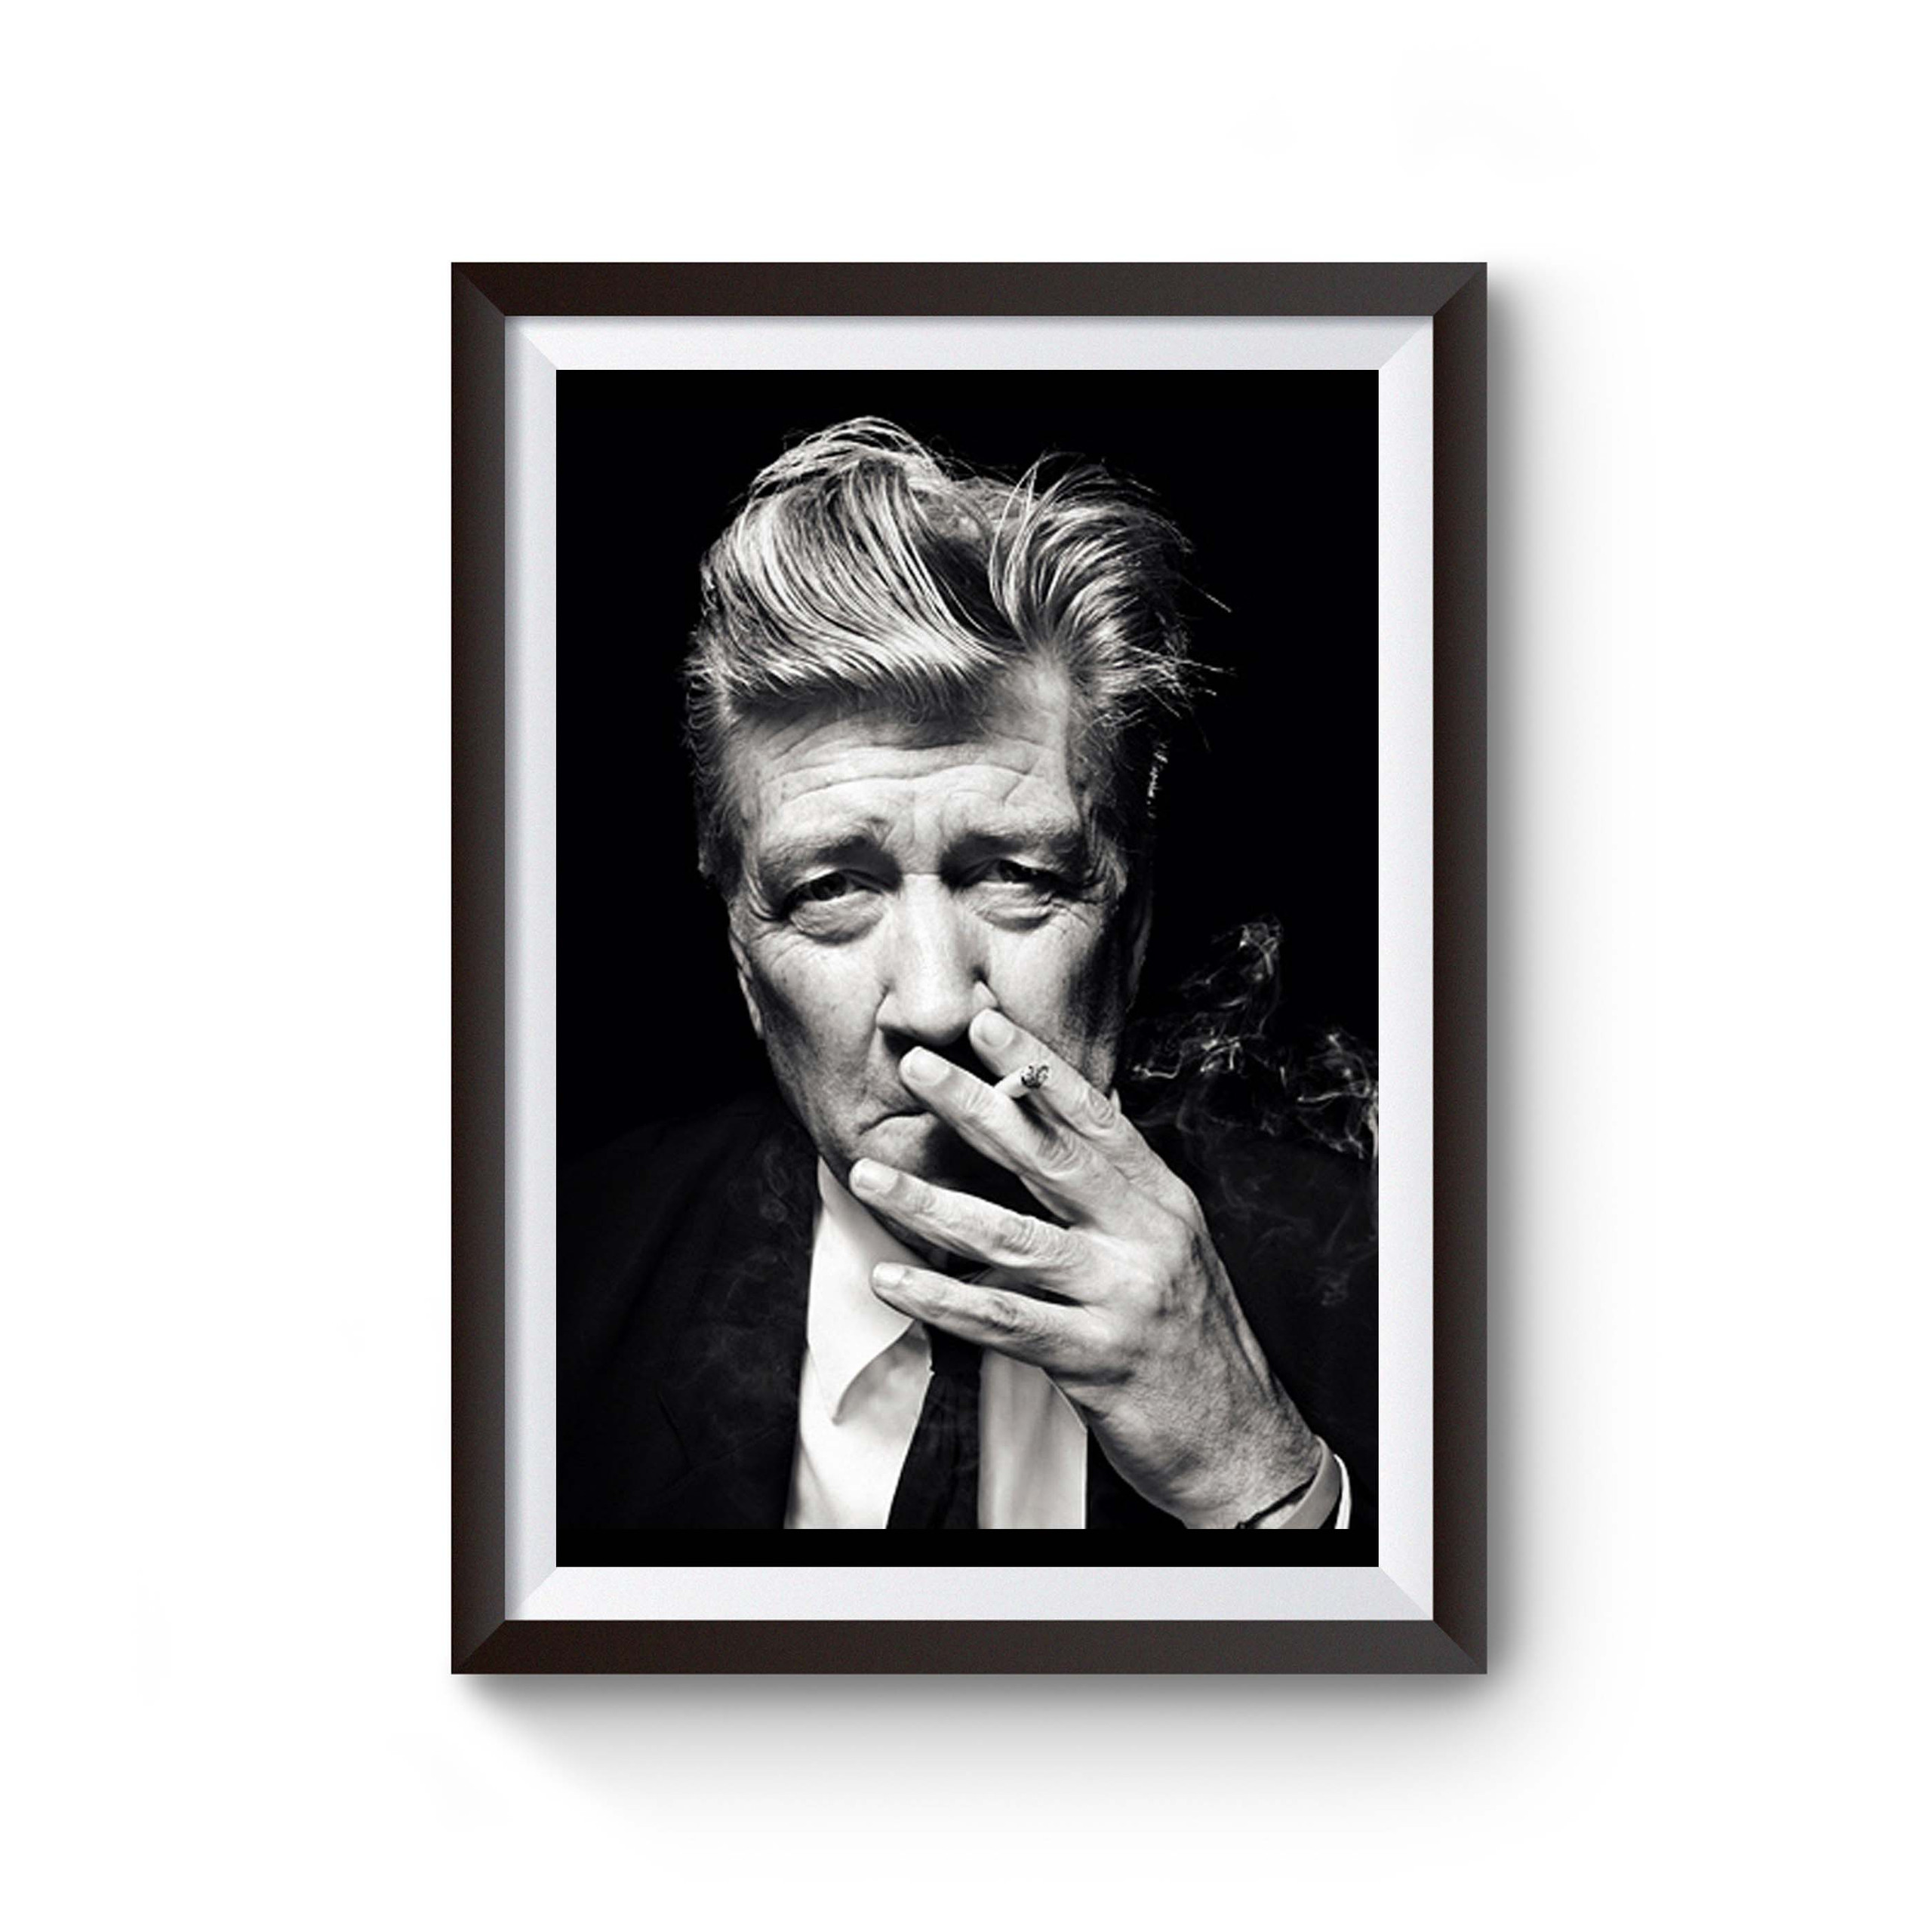 David Lynch Poster